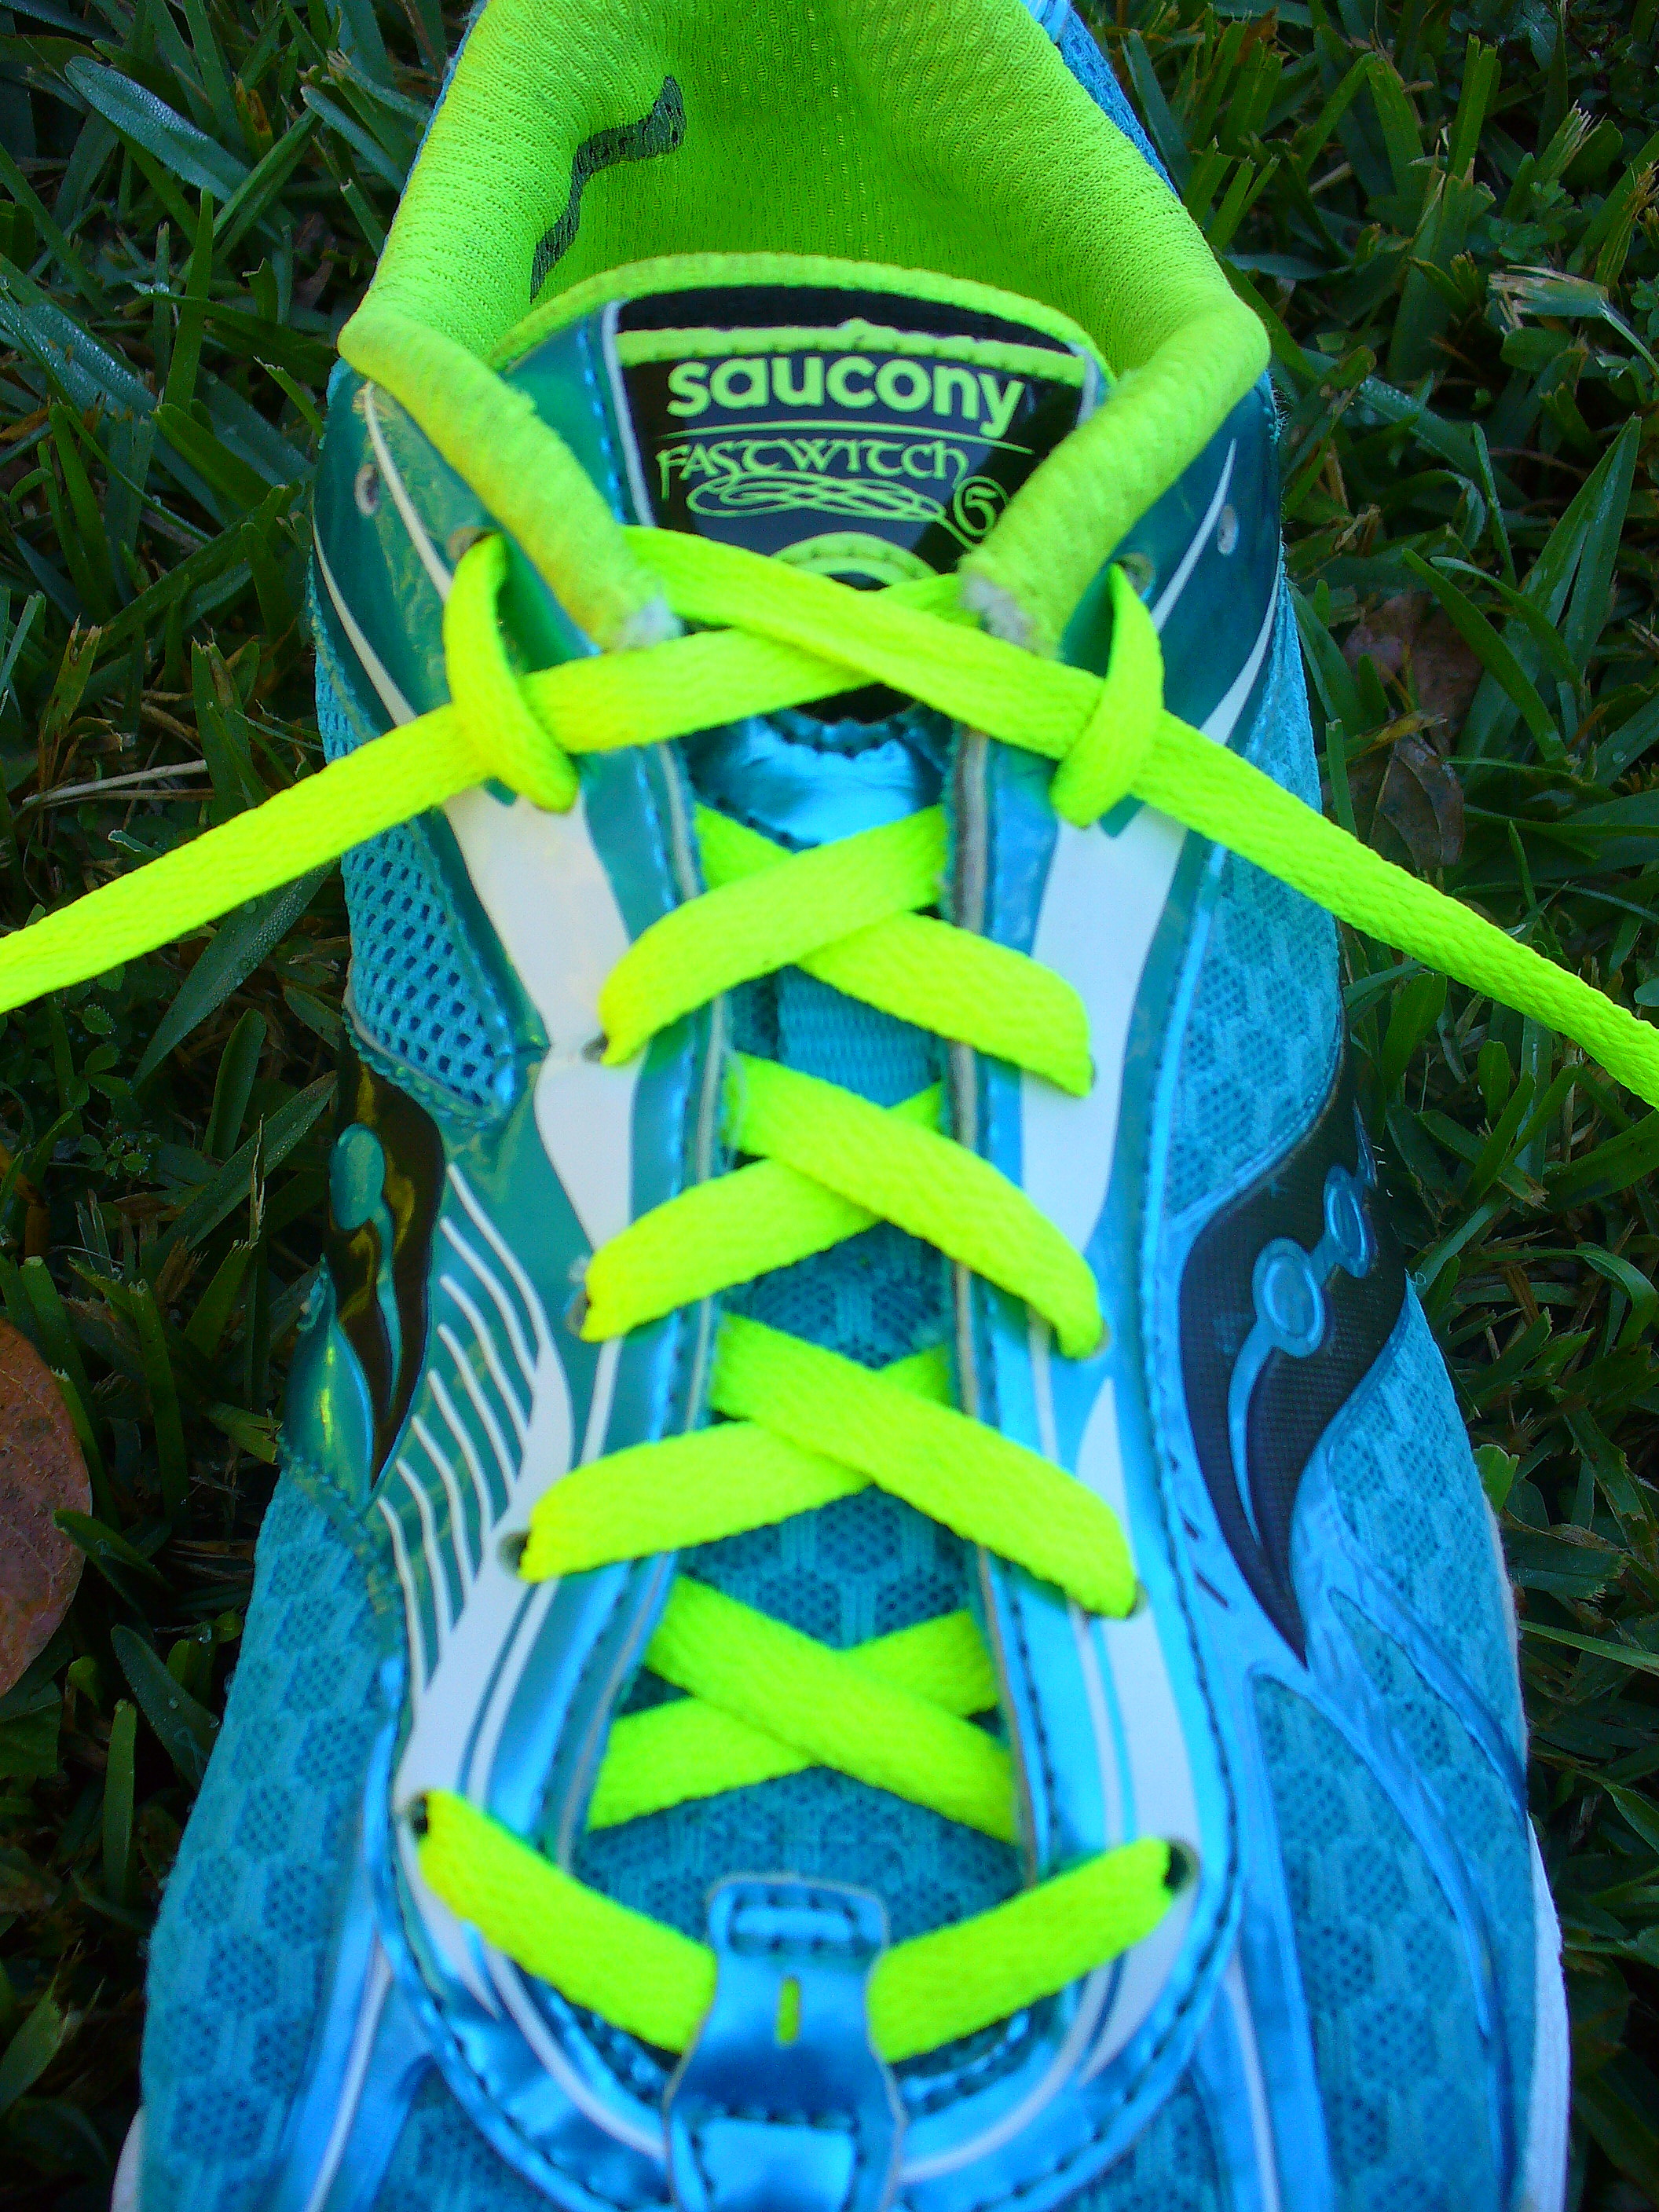 saucony shoe laces | www.euromaxcapital.com